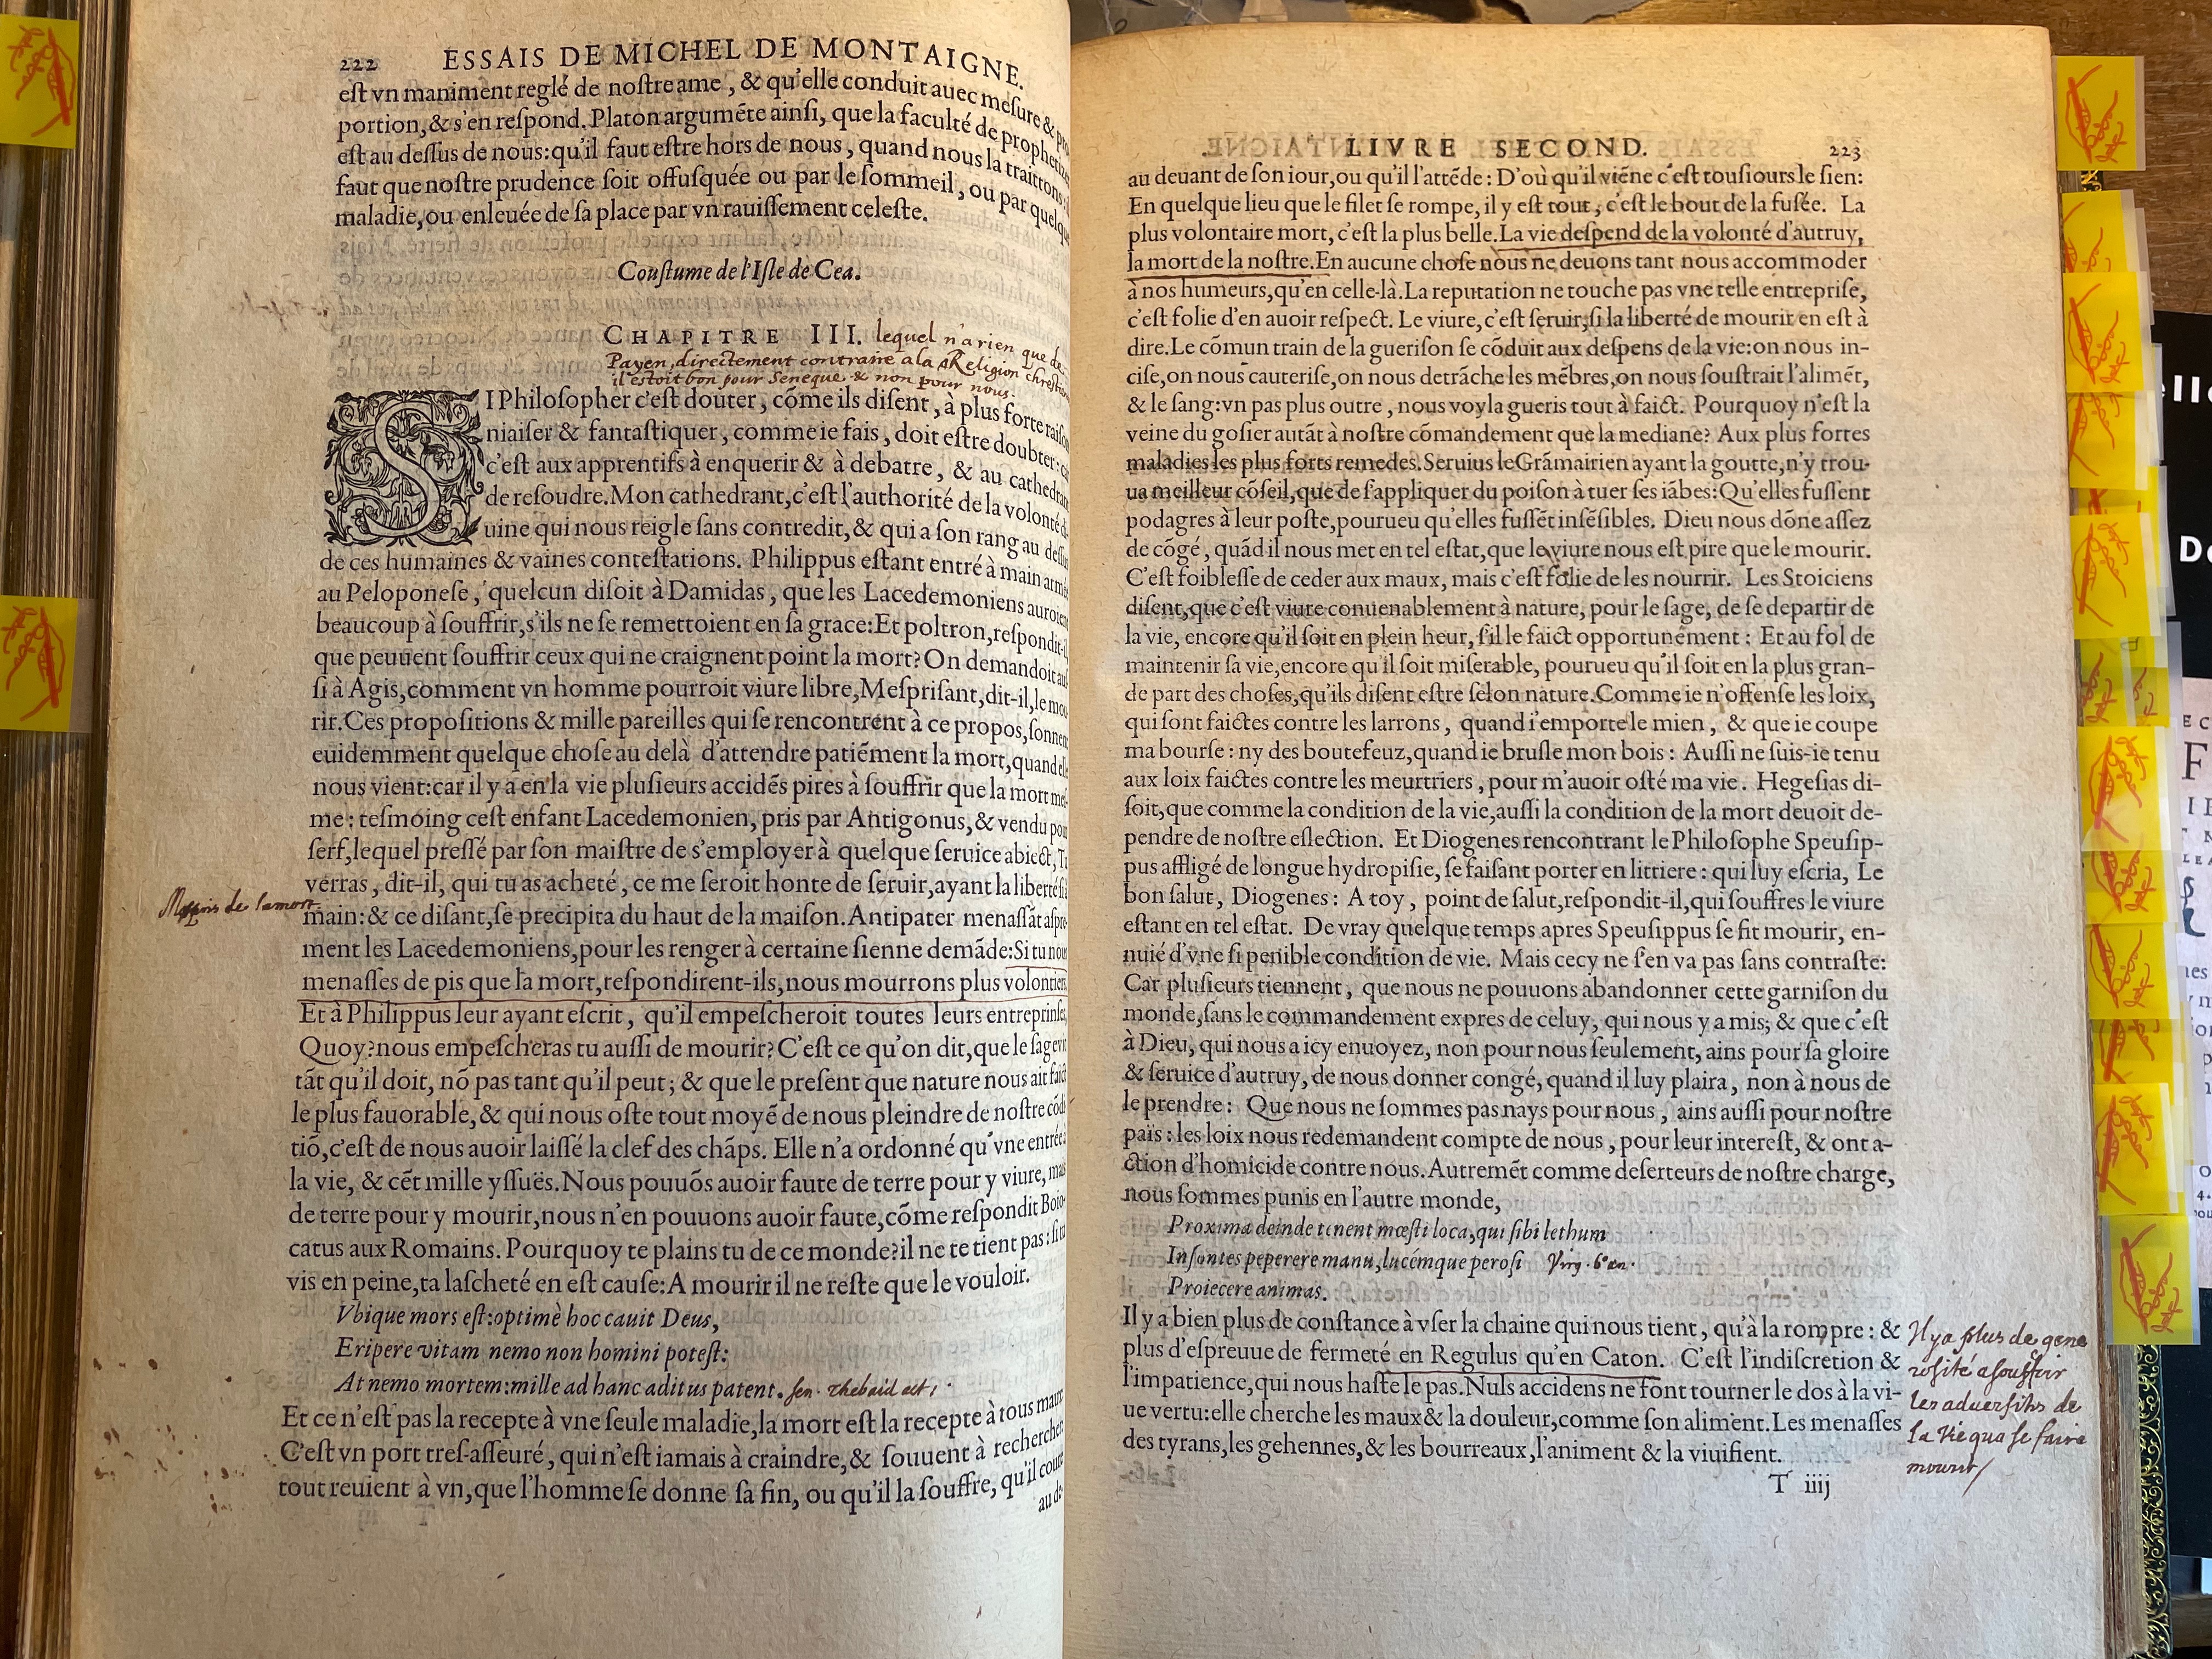 9. - p. 222-223, Livre II. Les Essais, 1595. Exemplaire Laval.